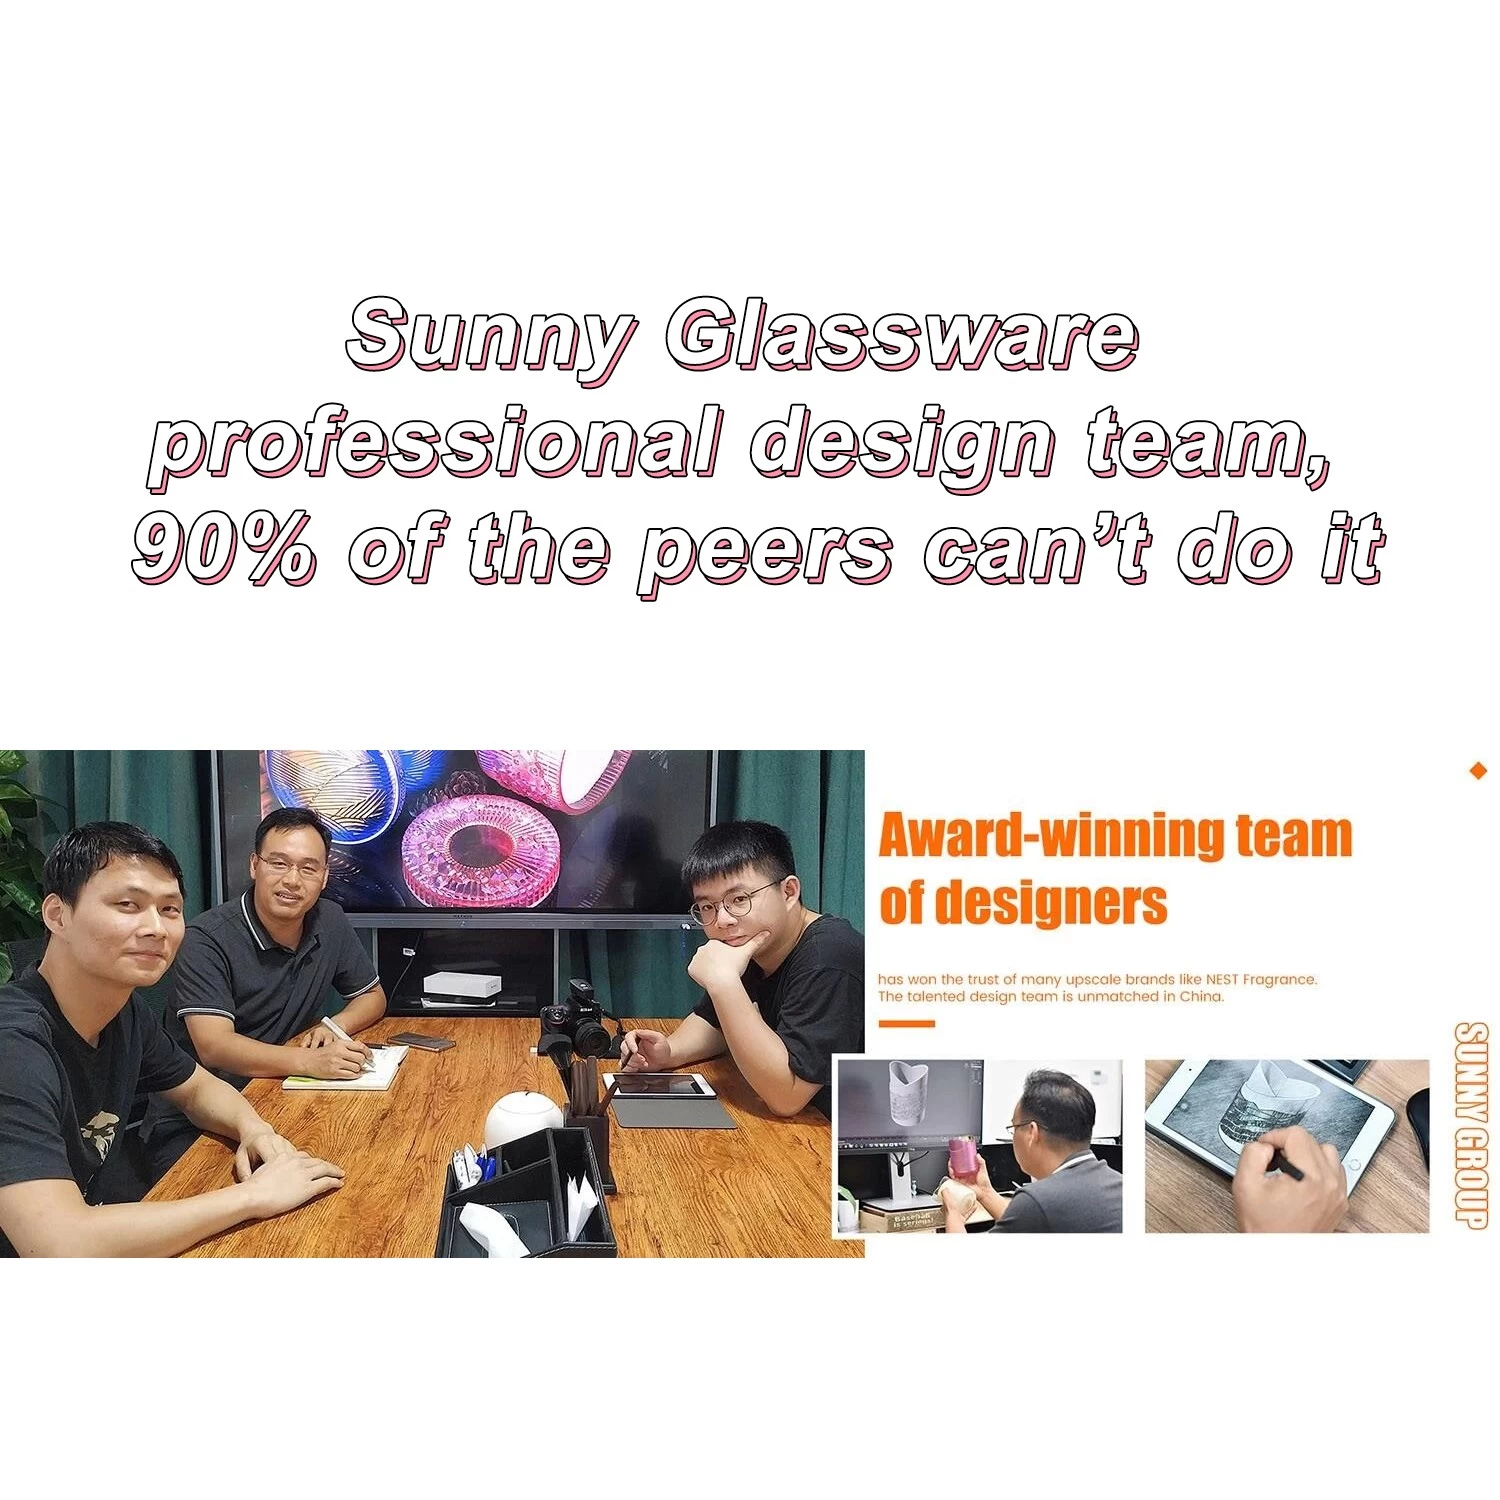 Профессиональная команда дизайнеров Sunny Glassware, 90% коллег не могут этого сделать